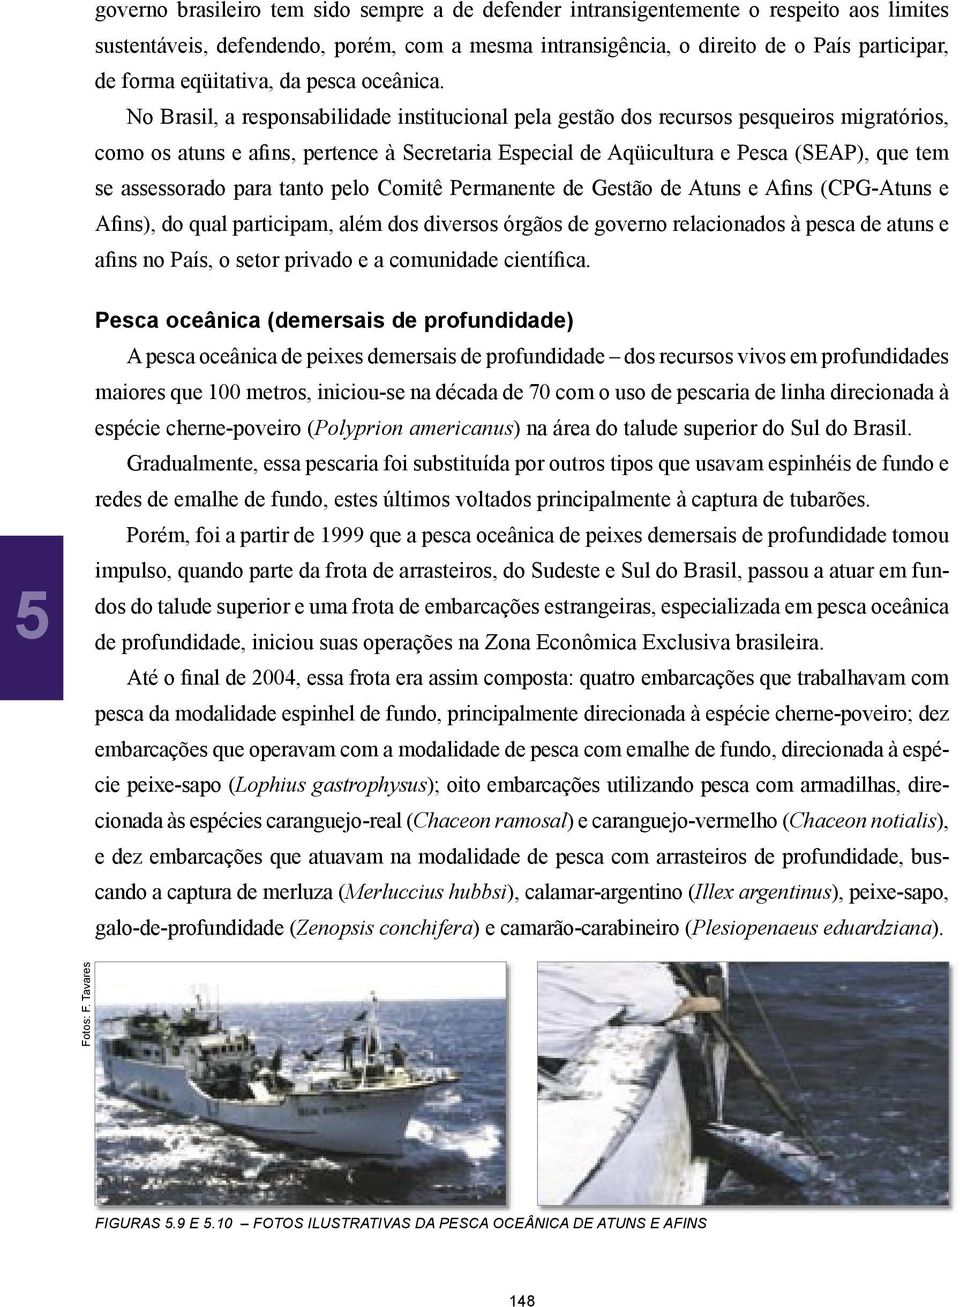 No Brasil, a responsabilidade institucional pela gestão dos recursos pesqueiros migratórios, como os atuns e afins, pertence à Secretaria Especial de Aqüicultura e Pesca (SEAP), que tem se